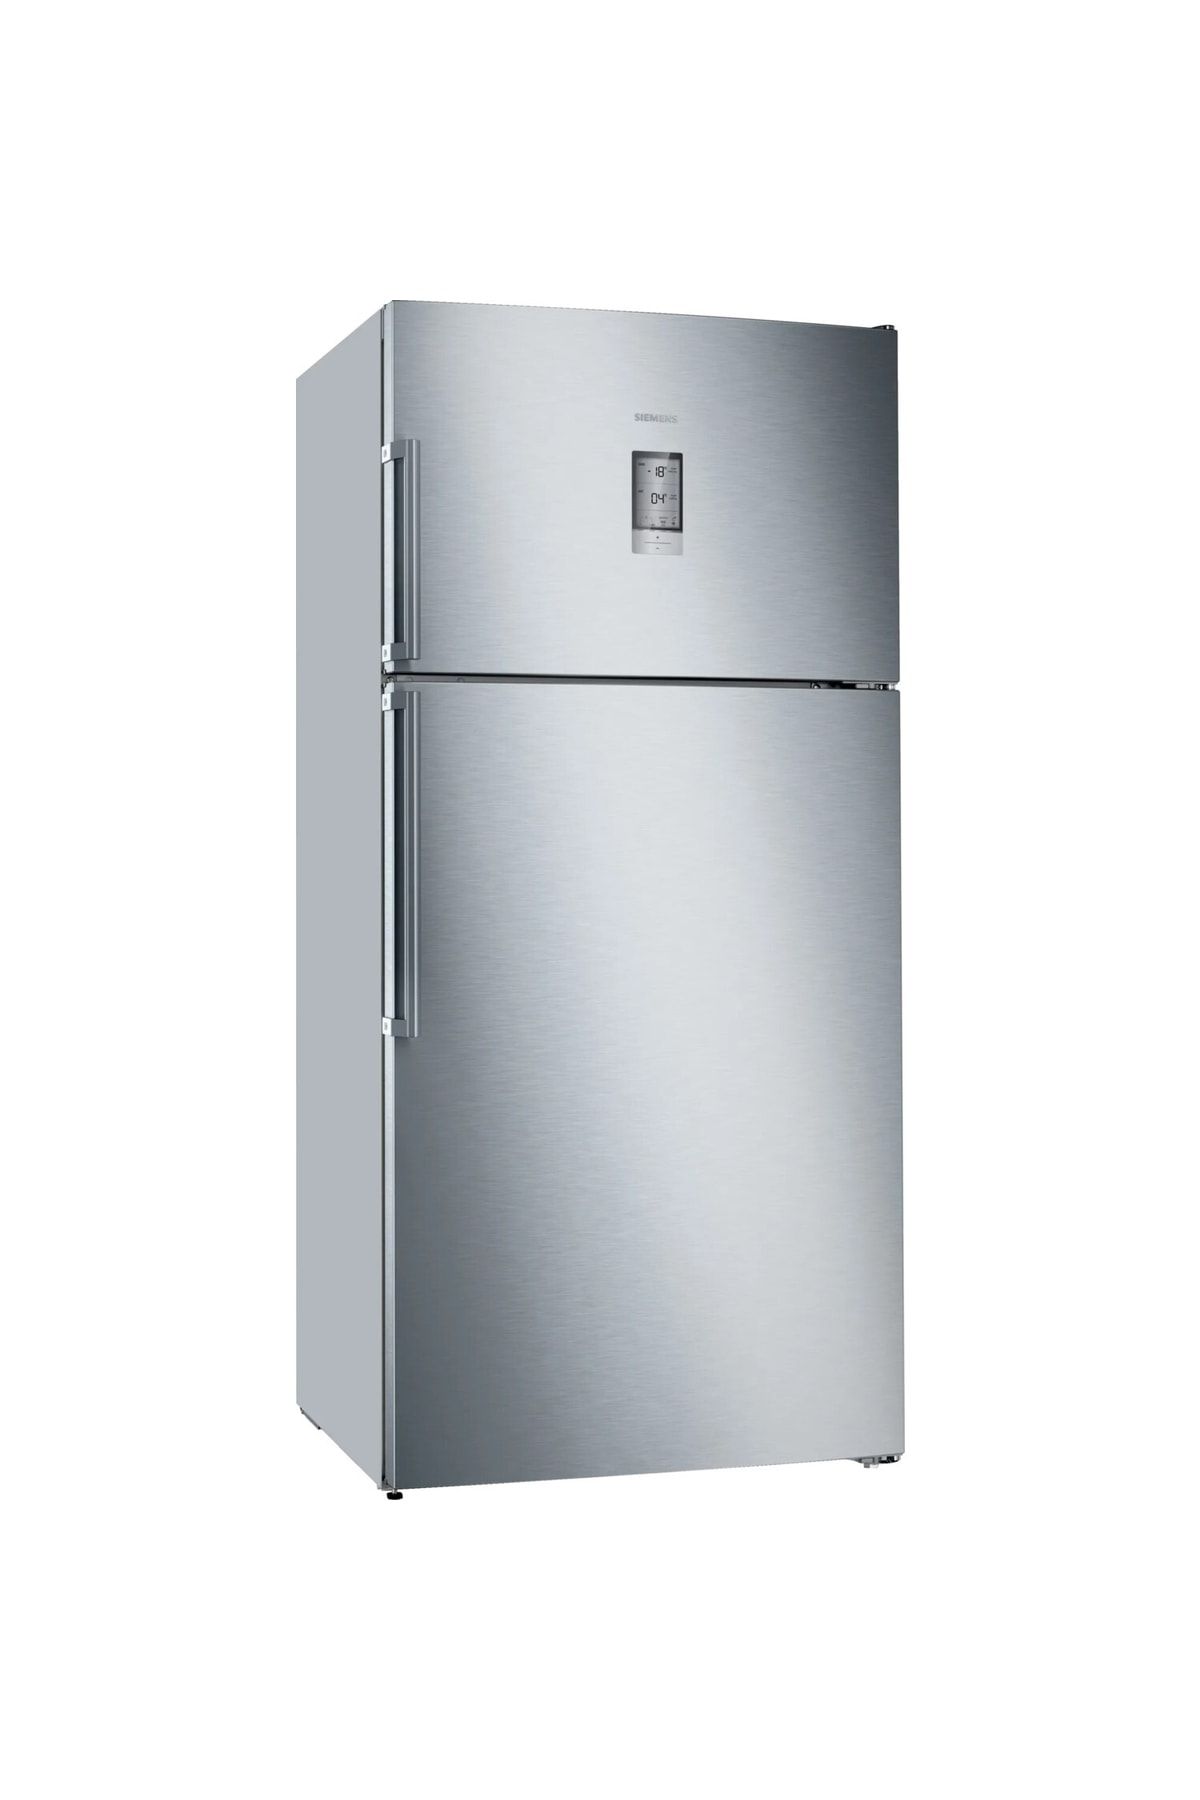 Siemens Kd86nhıd1n D Sınıfı No Frost Buzdolabı